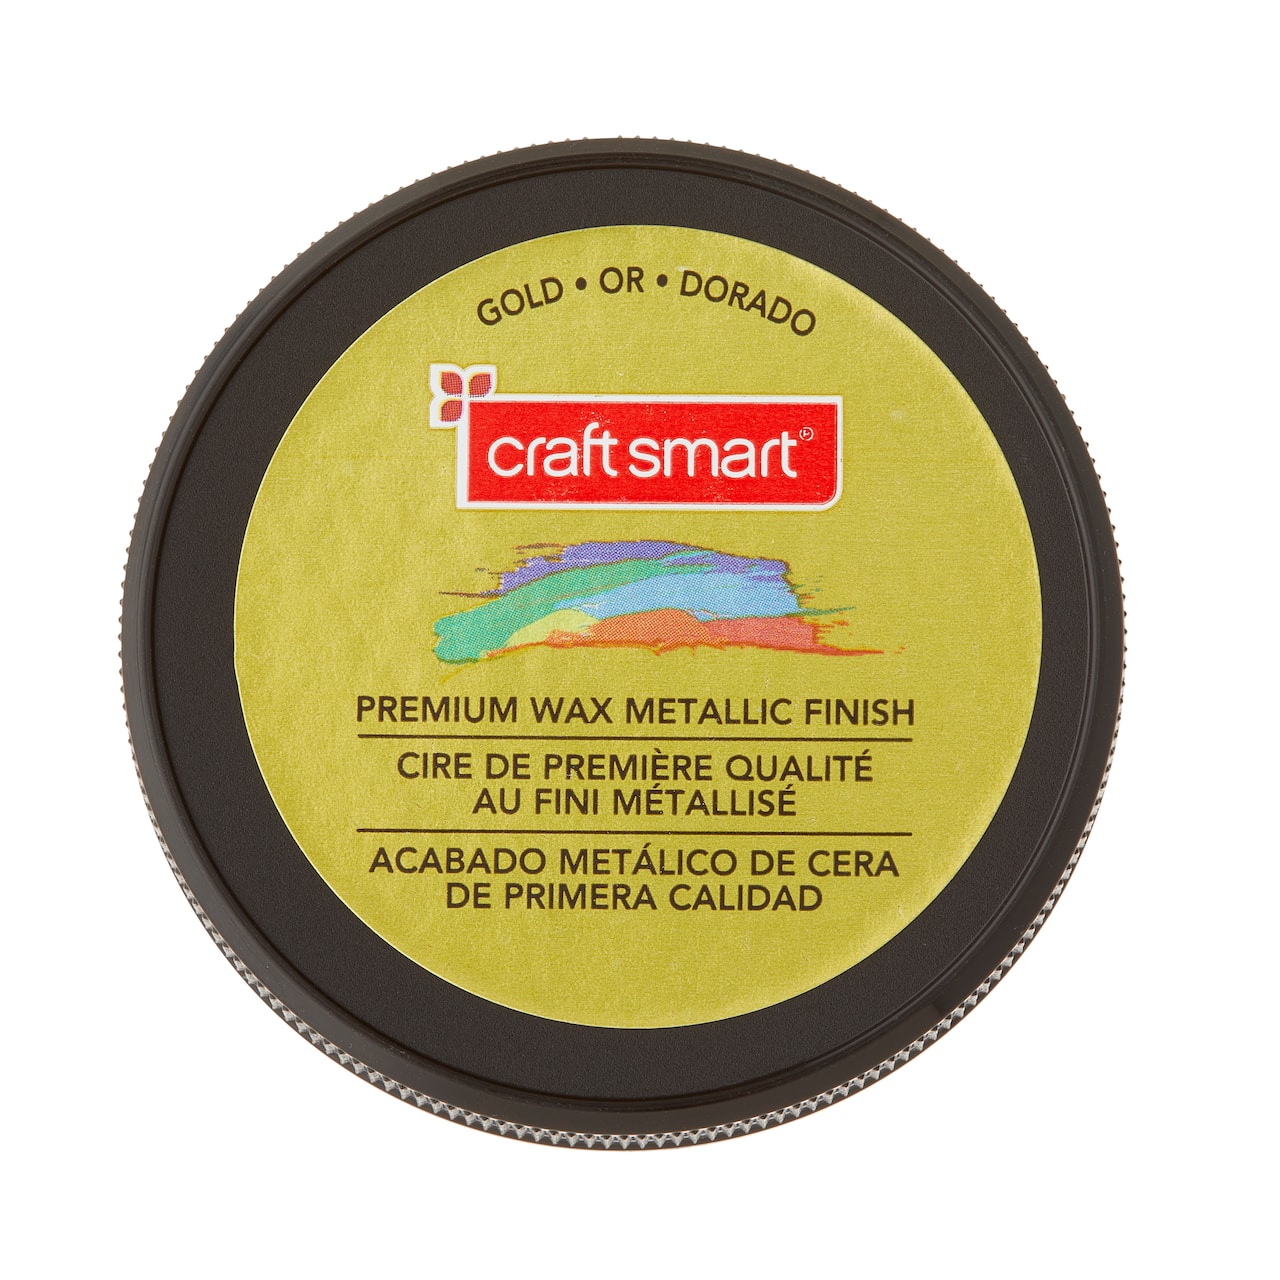 Premium Wax Metallic Finish By Craft Smart&#xAE;